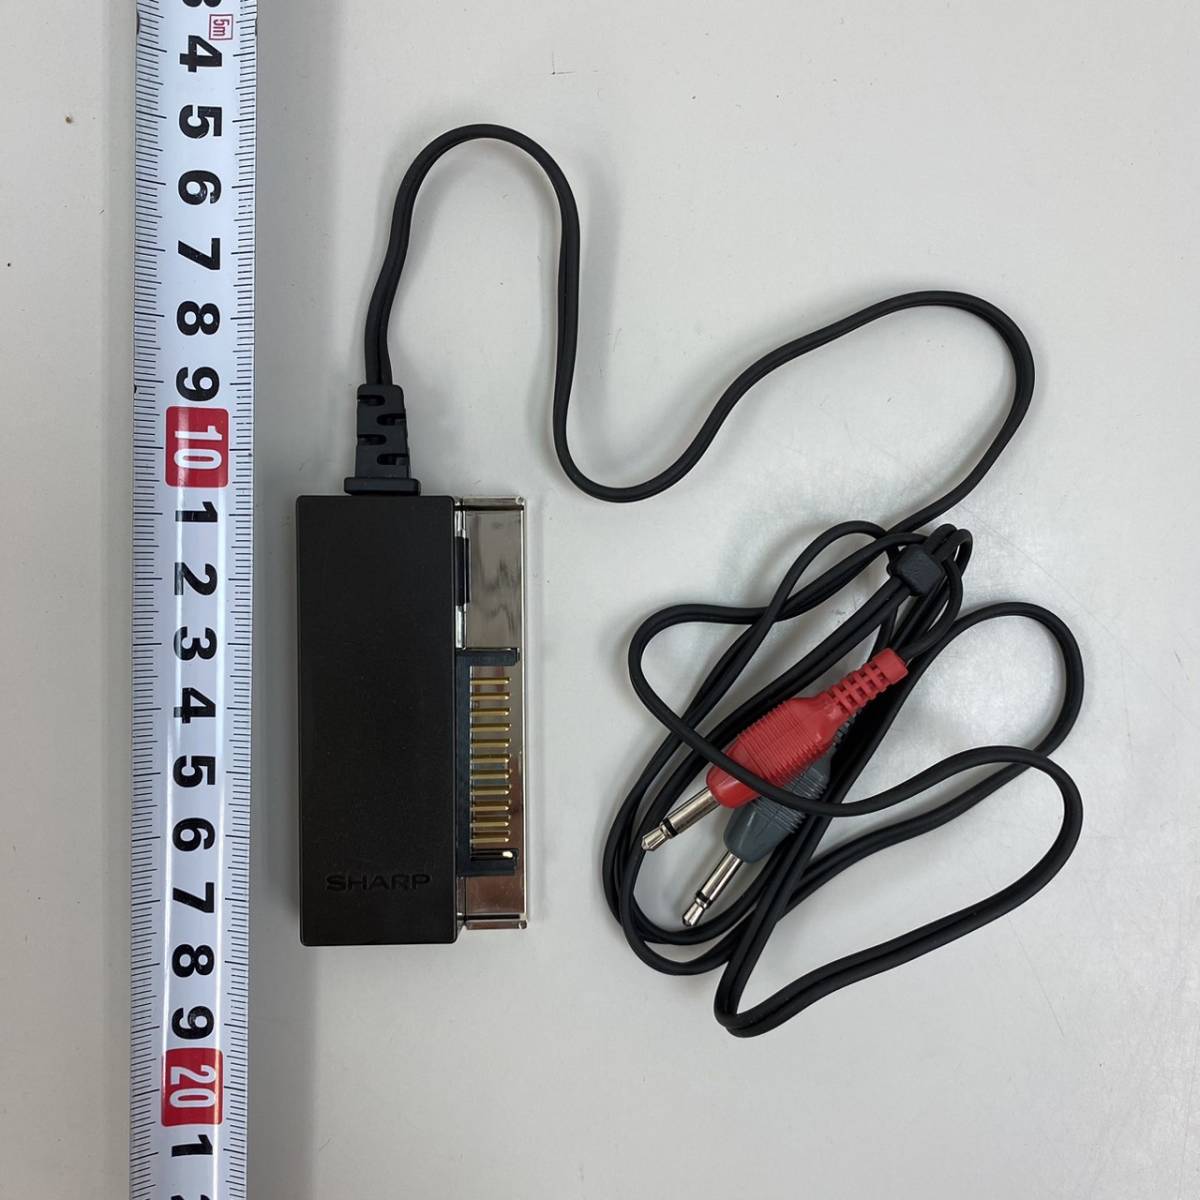 22L1128** SHARP sharp CE-124 карманный компьютер для кассета интерфейс CASSETTE INTERFACE работоспособность не проверялась **